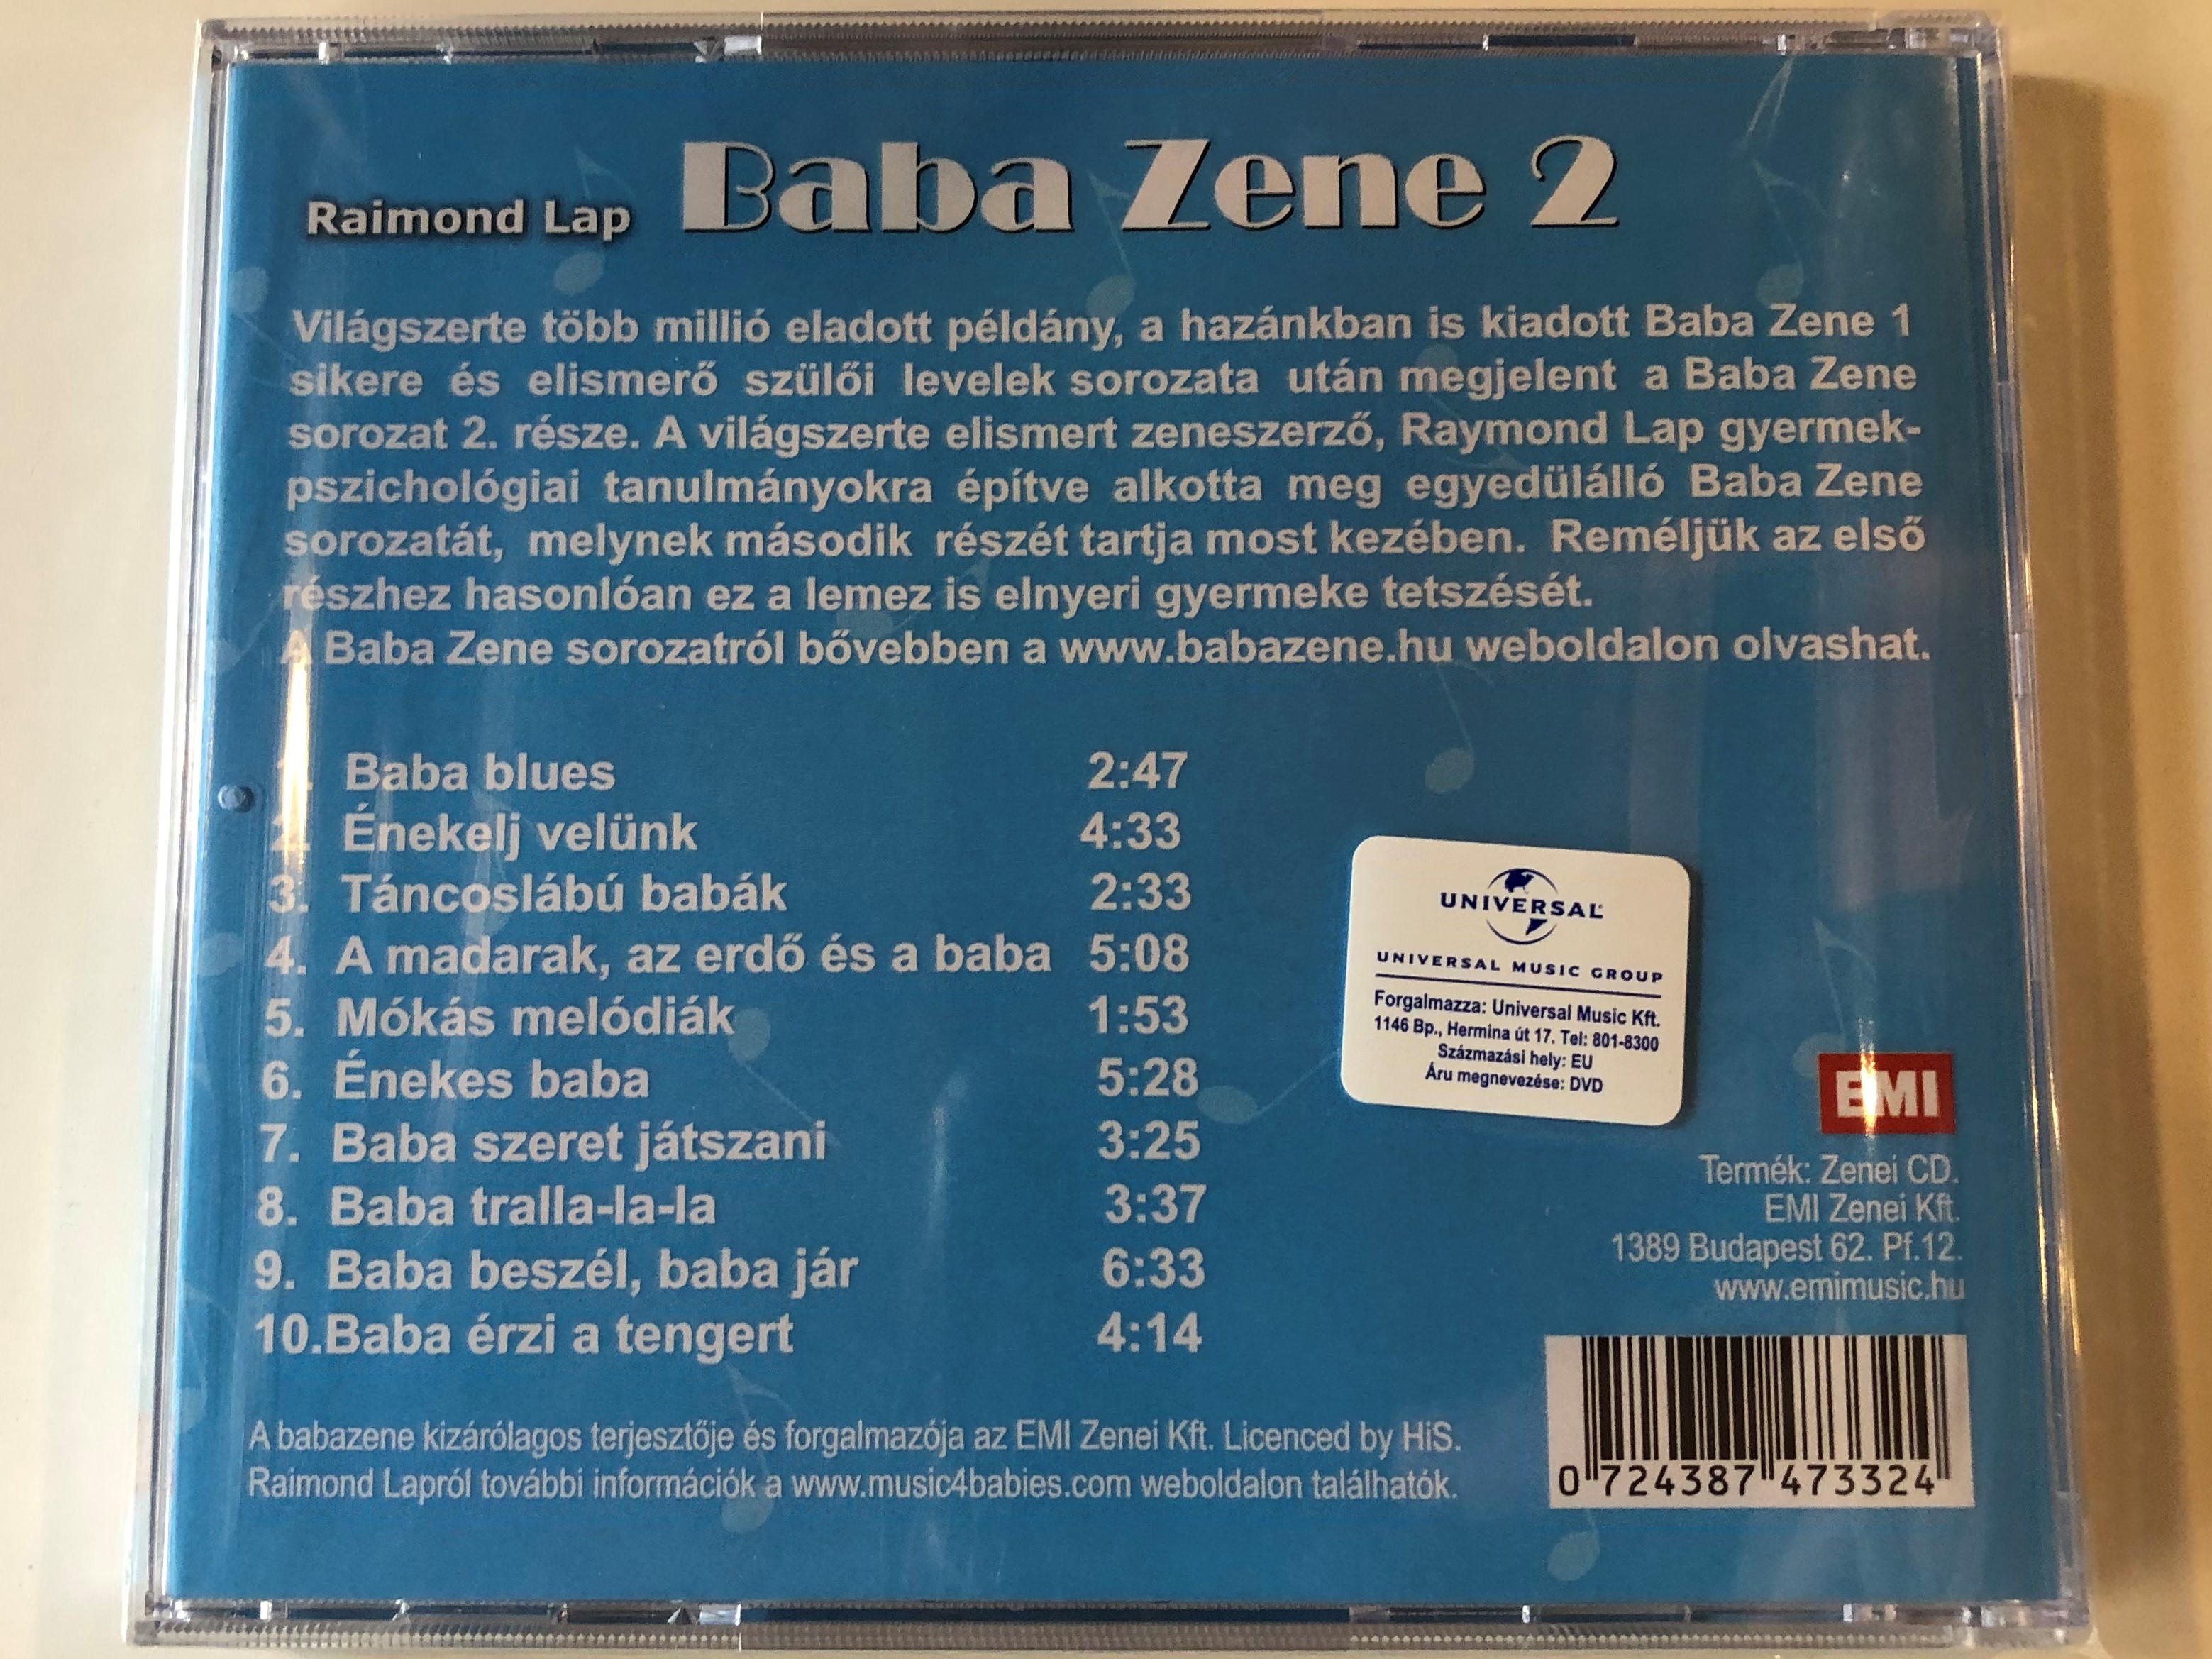 baba-zene-2.-raimond-lap-emi-audio-cd-0724387473324-2-.jpg